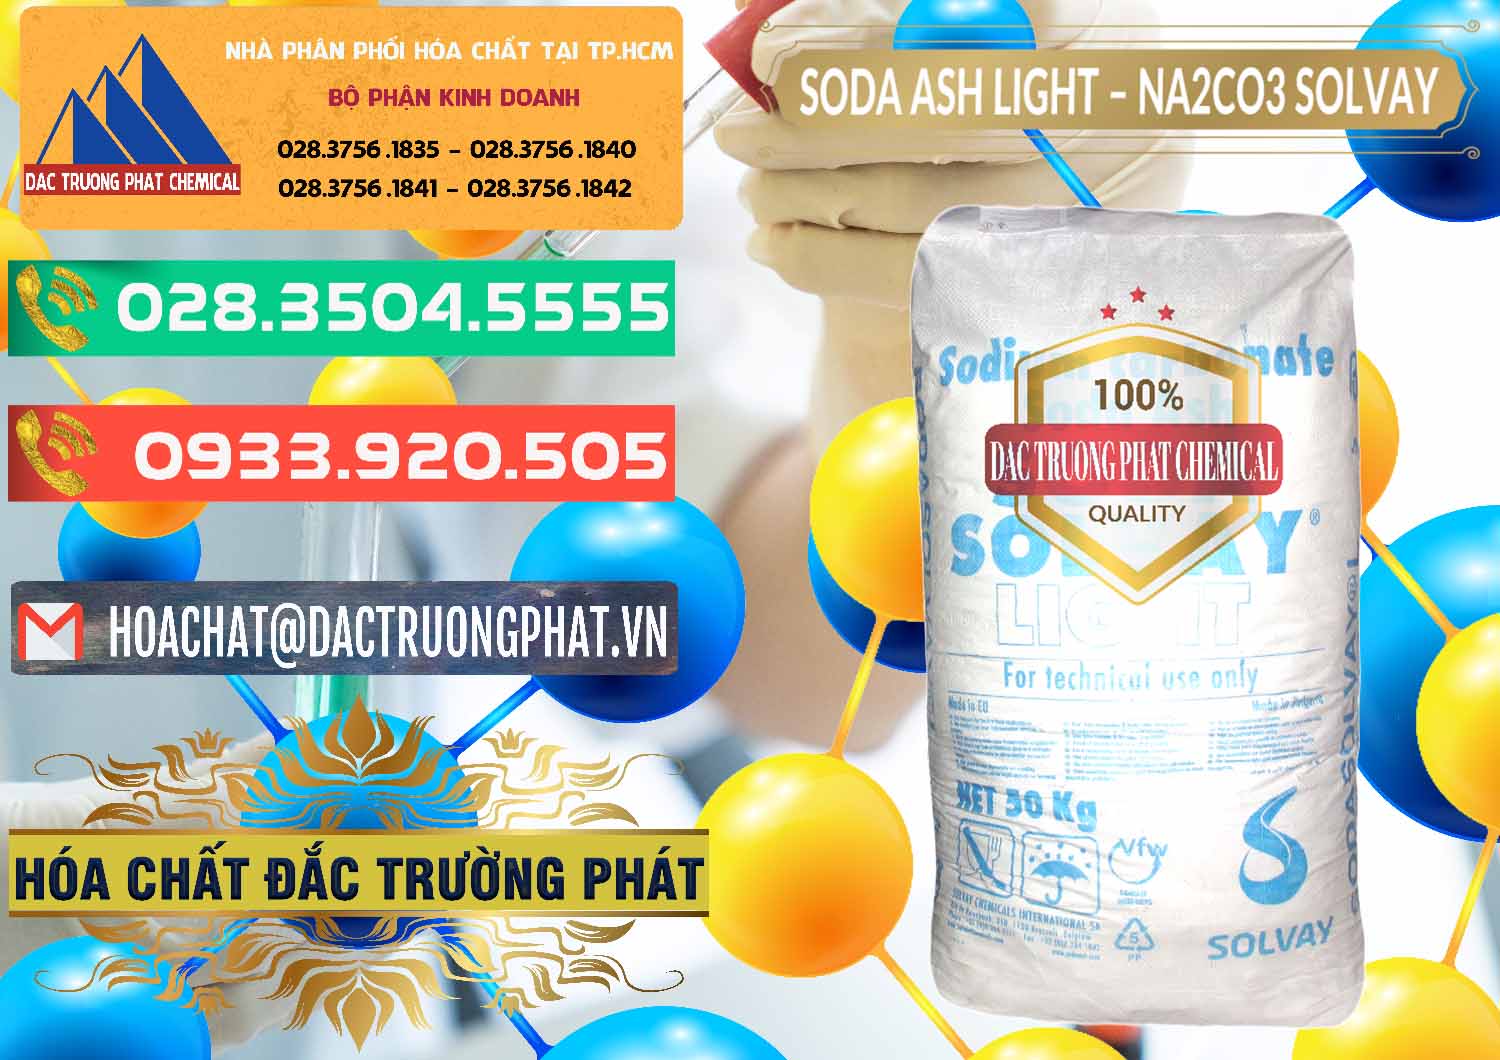 Cty chuyên bán _ cung ứng Soda Ash Light - NA2CO3 Solvay Bulgaria - 0126 - Cty cung cấp _ phân phối hóa chất tại TP.HCM - congtyhoachat.com.vn